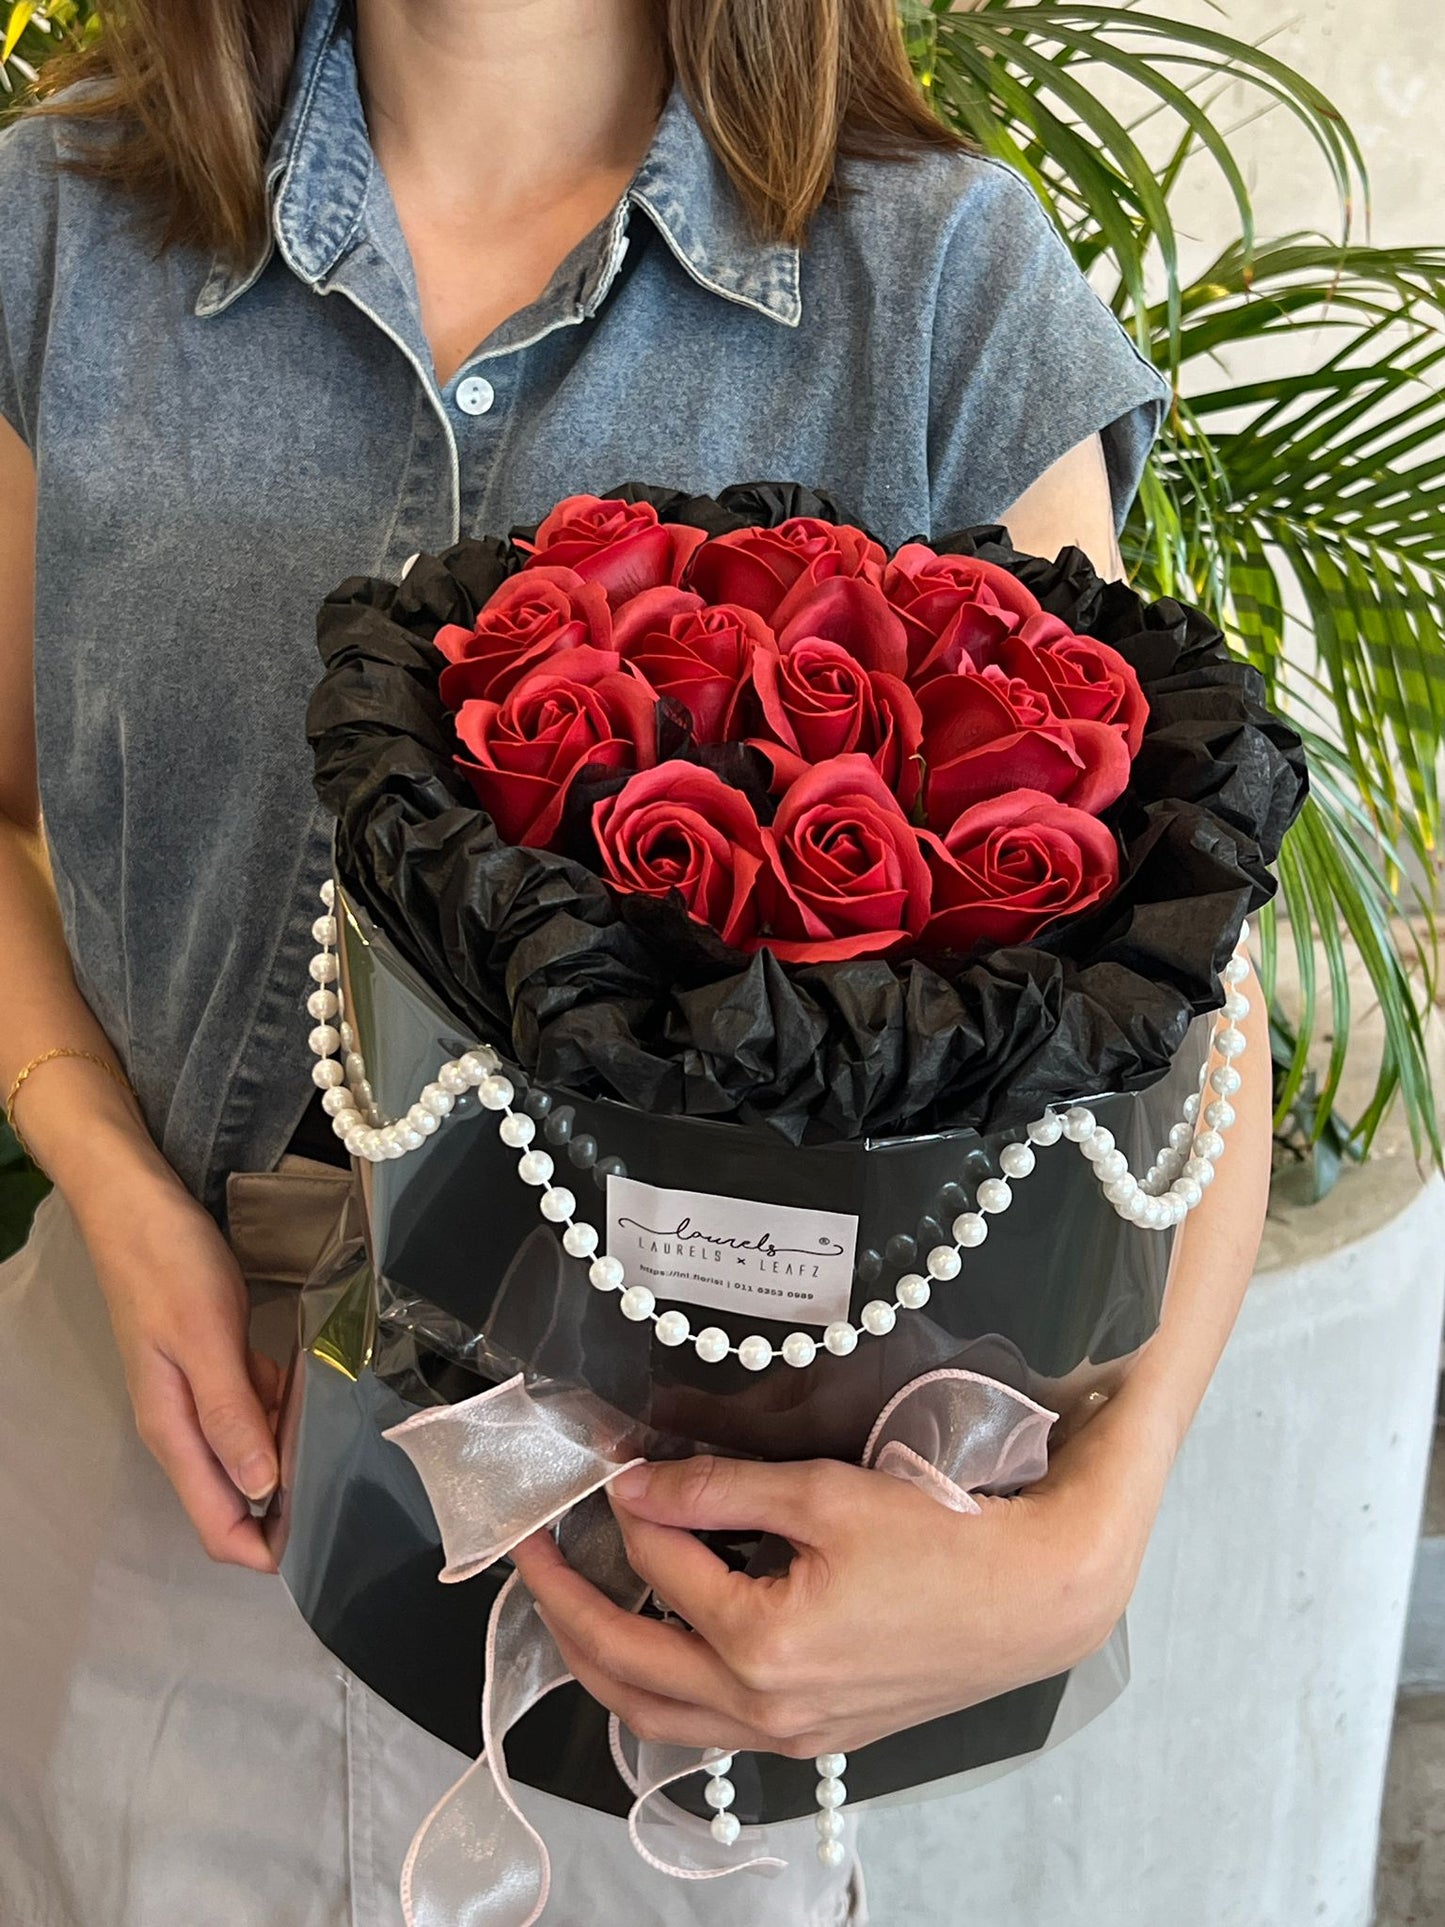 Valentine's Day Special Promotion - Black Romance Rose Bouquet | LnL Florist